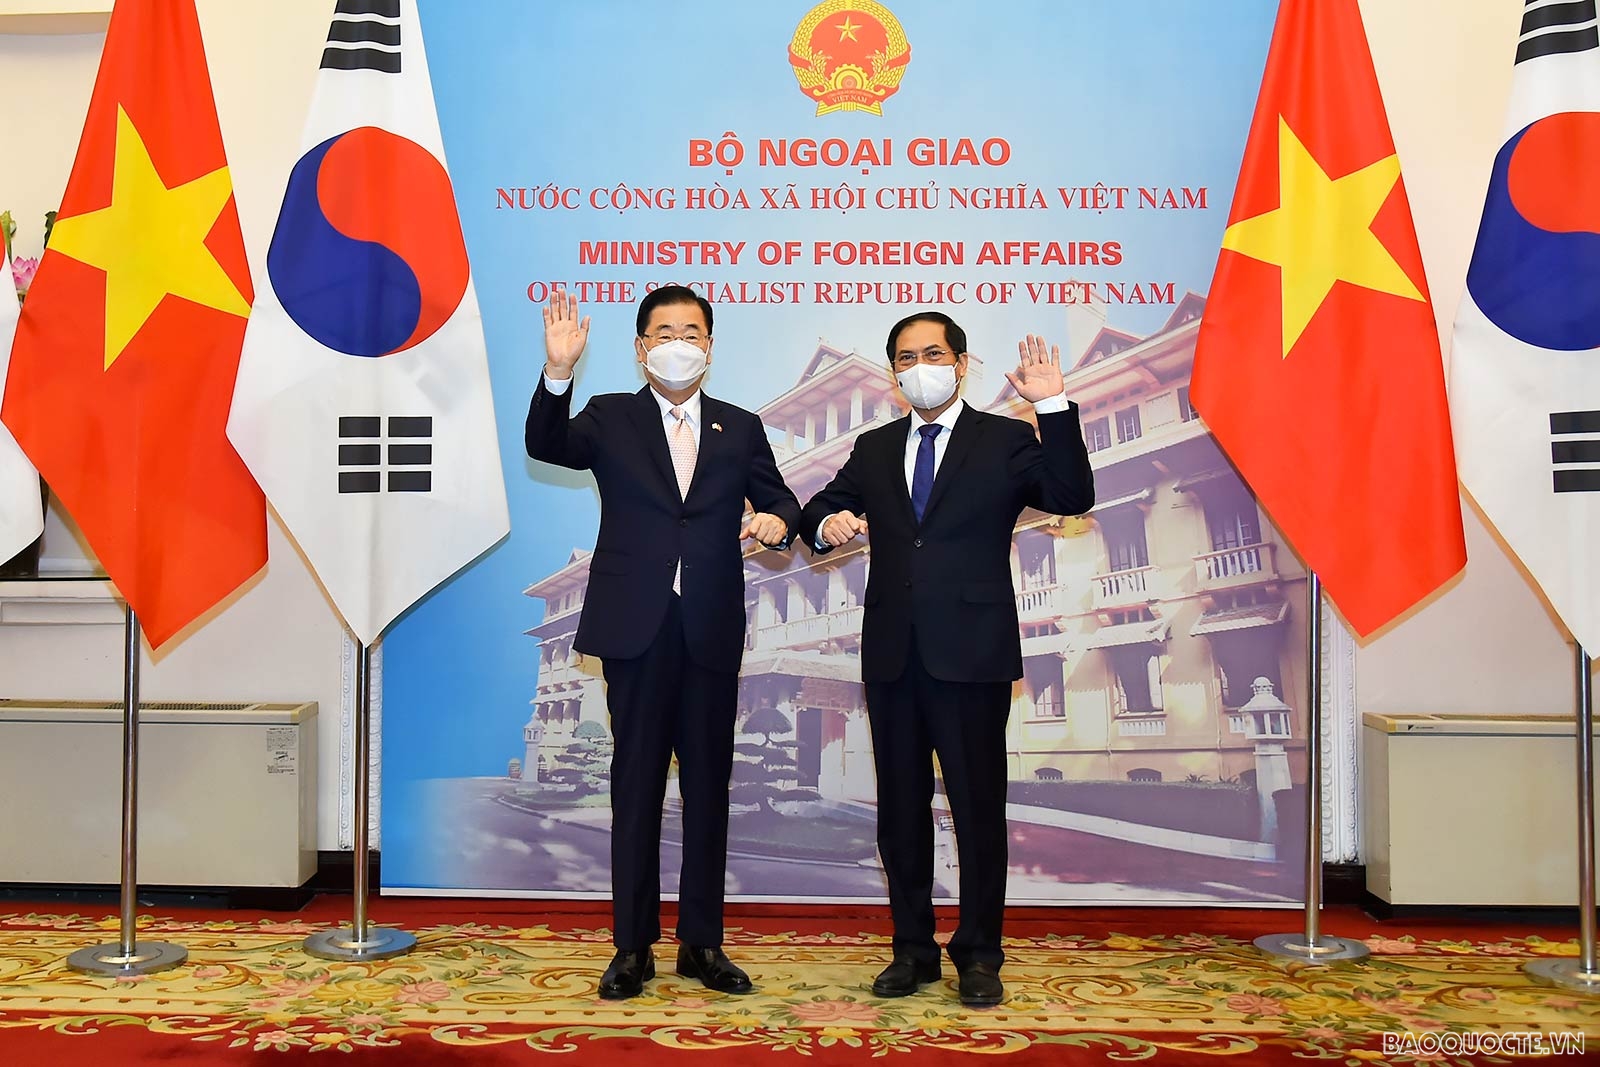 Bộ trưởng Ngoại giao Bùi Thanh Sơn đón, hội đàm với Bộ trưởng Ngoại giao Hàn Quốc Chung Eui Yong